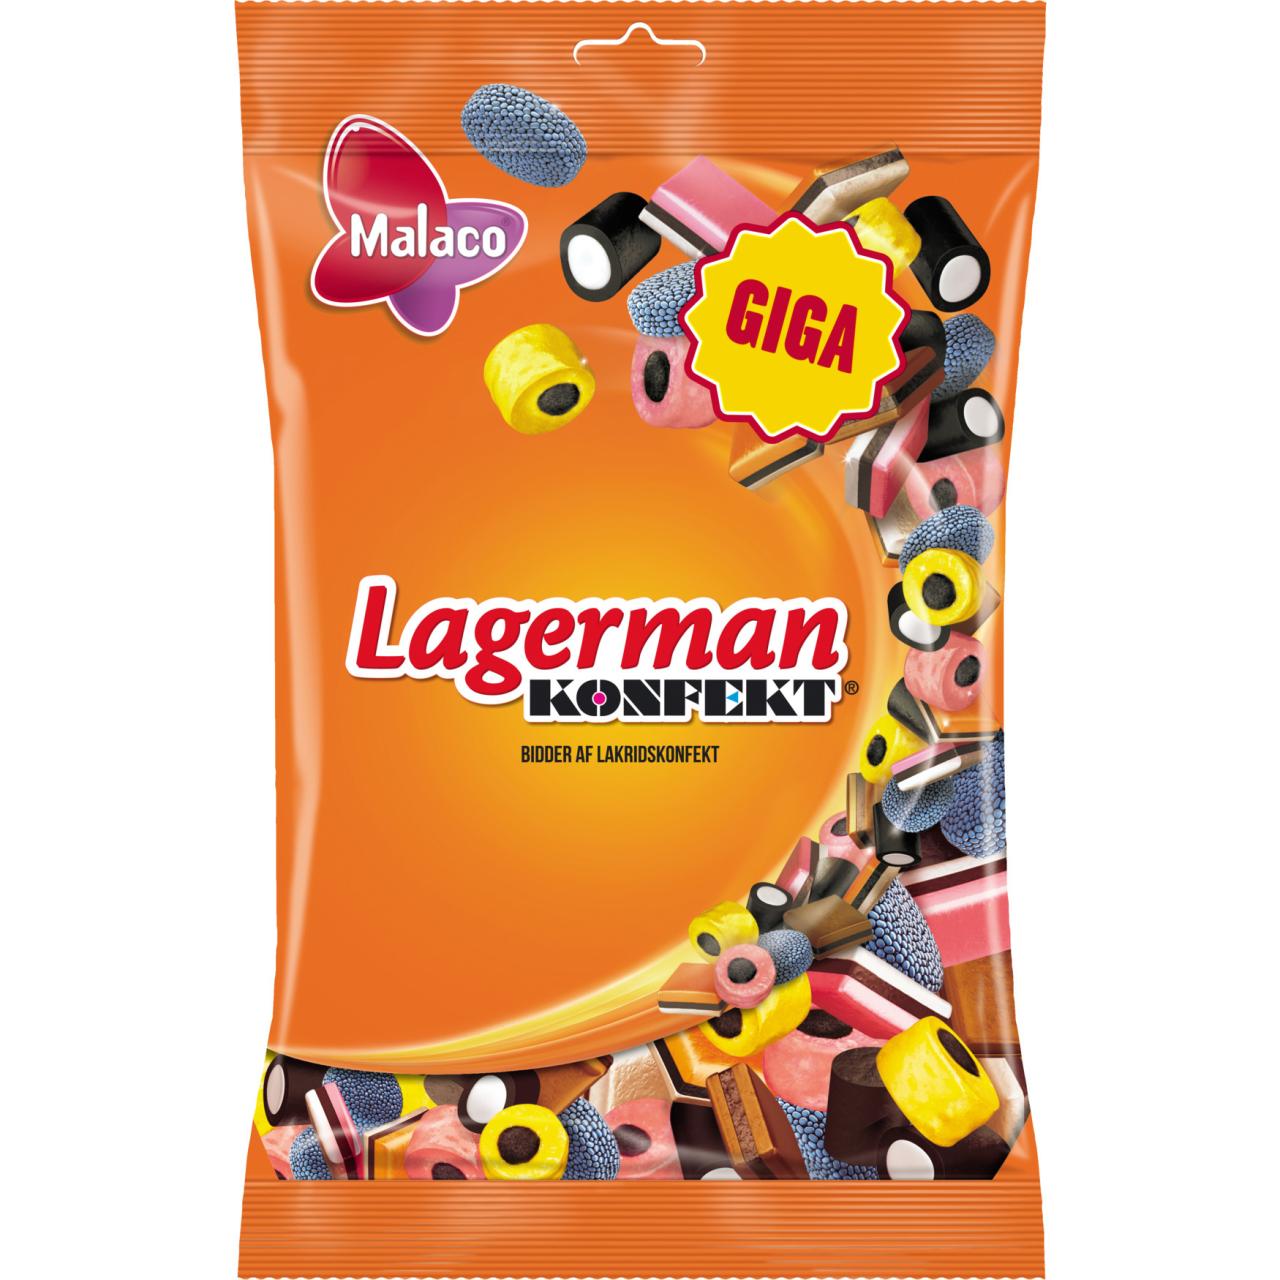 Malaco Lagerman Konfekt 900g